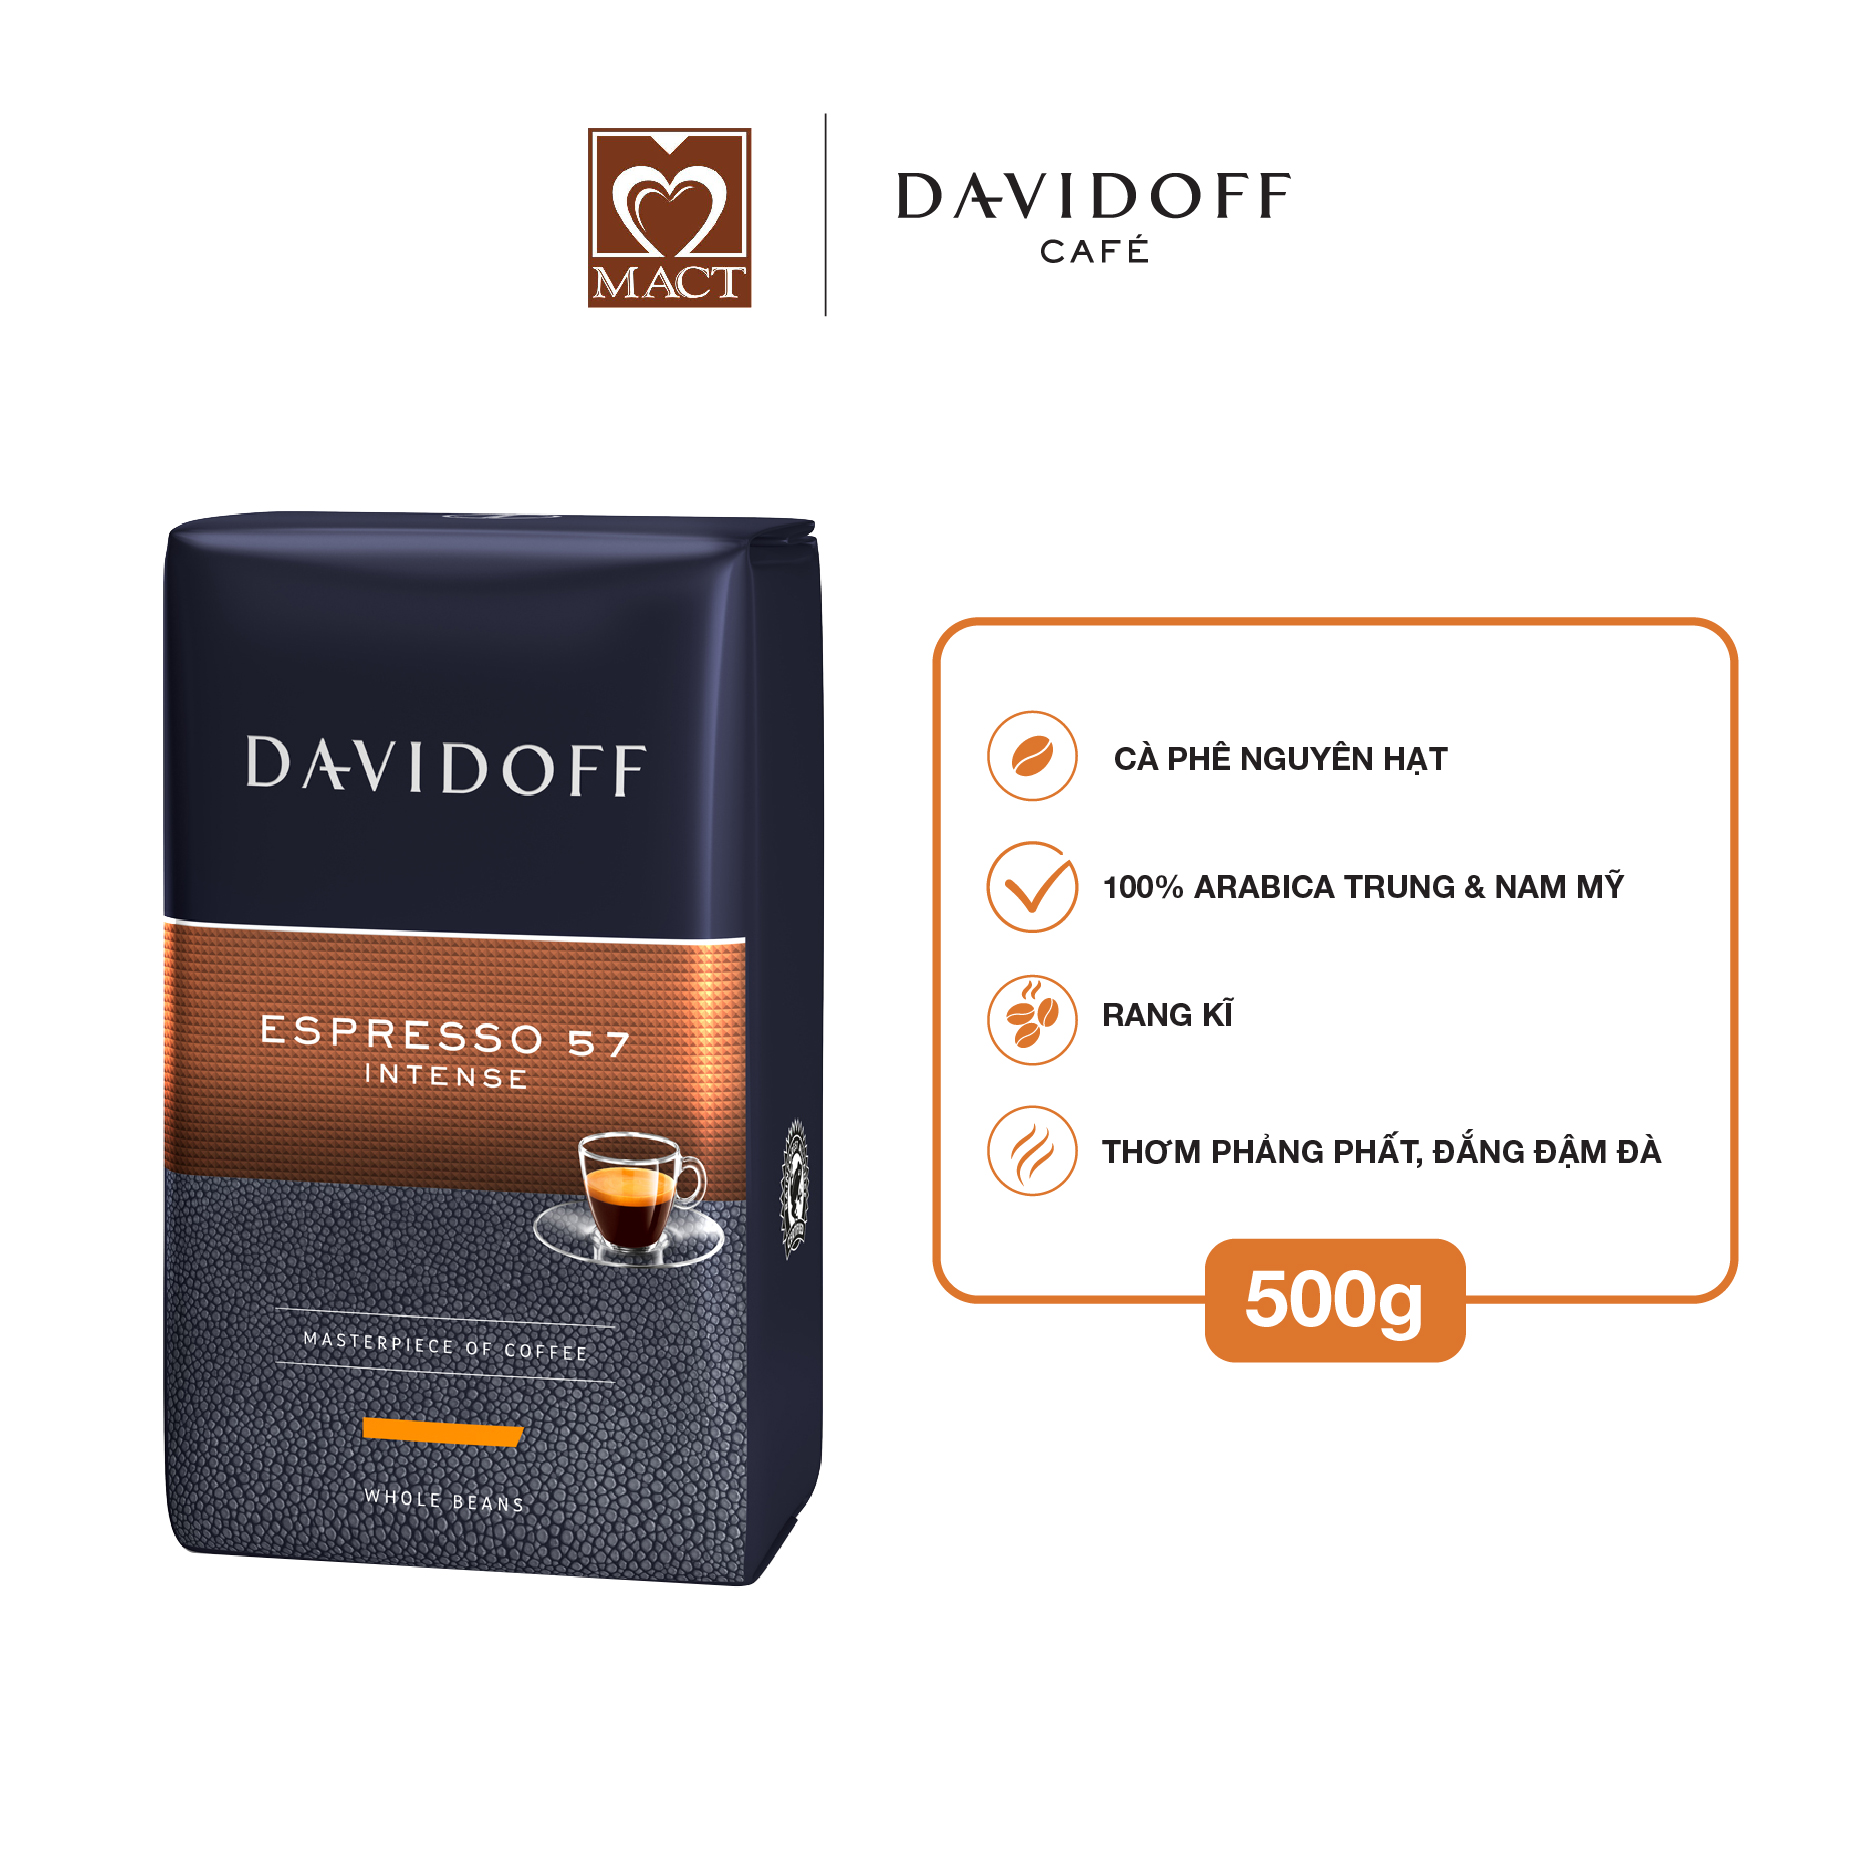 Cà phê nguyên hạt hạng sang Davidoff Café - Espresso 57 - 500g